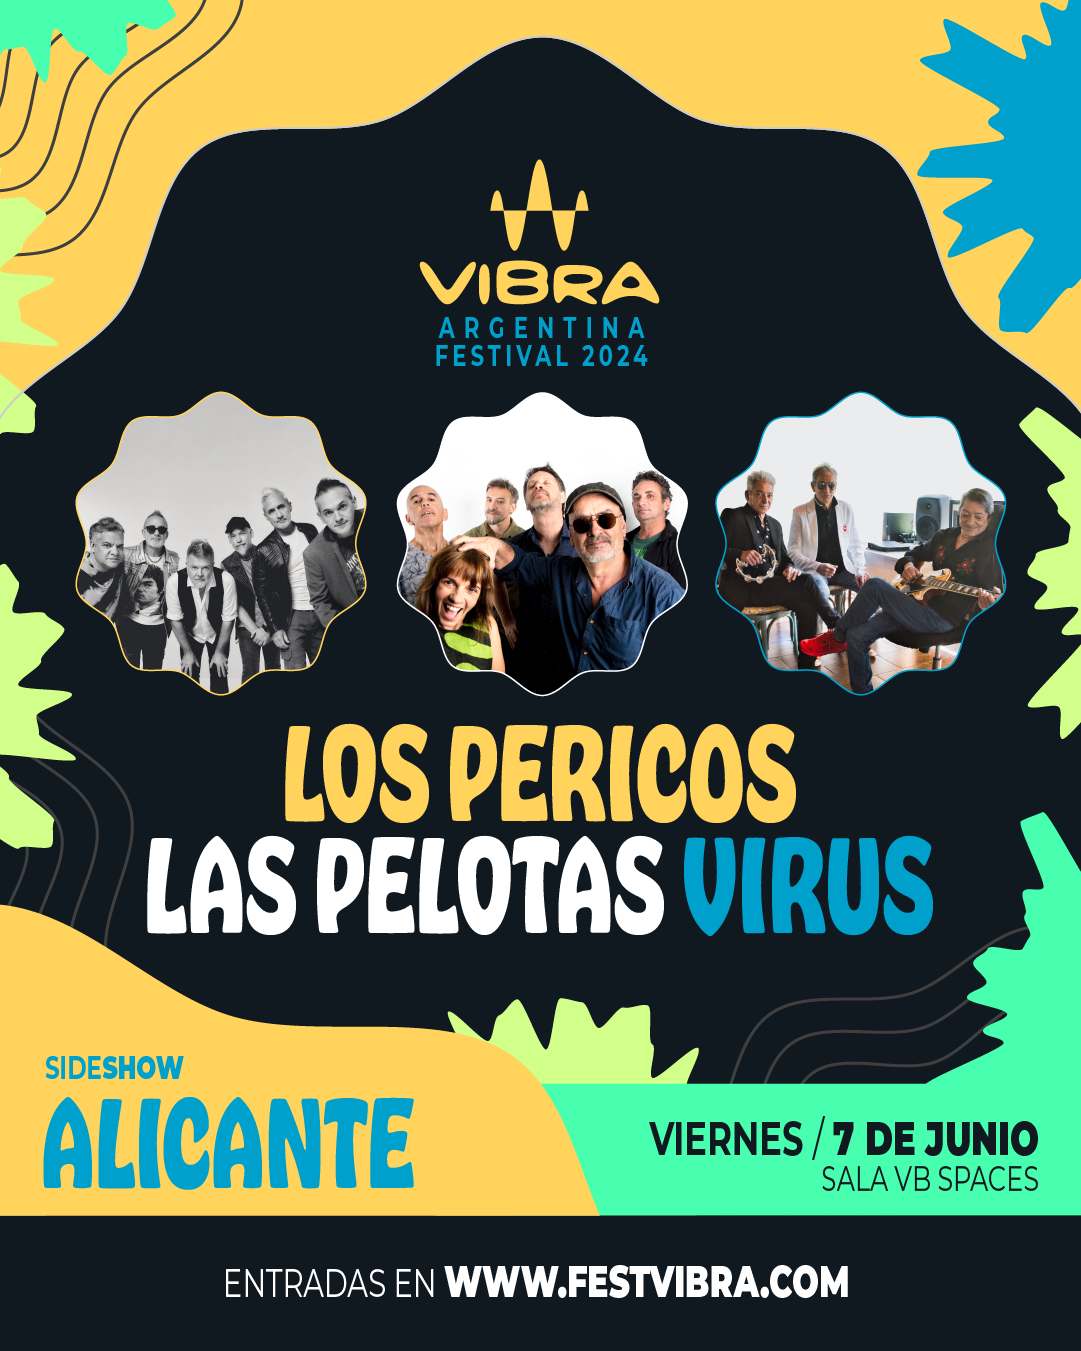 VIBRA ARGENTINA FESTIVAL 2024 en ALICANTE, sala VB Space, Viernes 7 Junio Los Pericos, Las Pelotas y Virus. Entradas y Info: www.festvibra.com